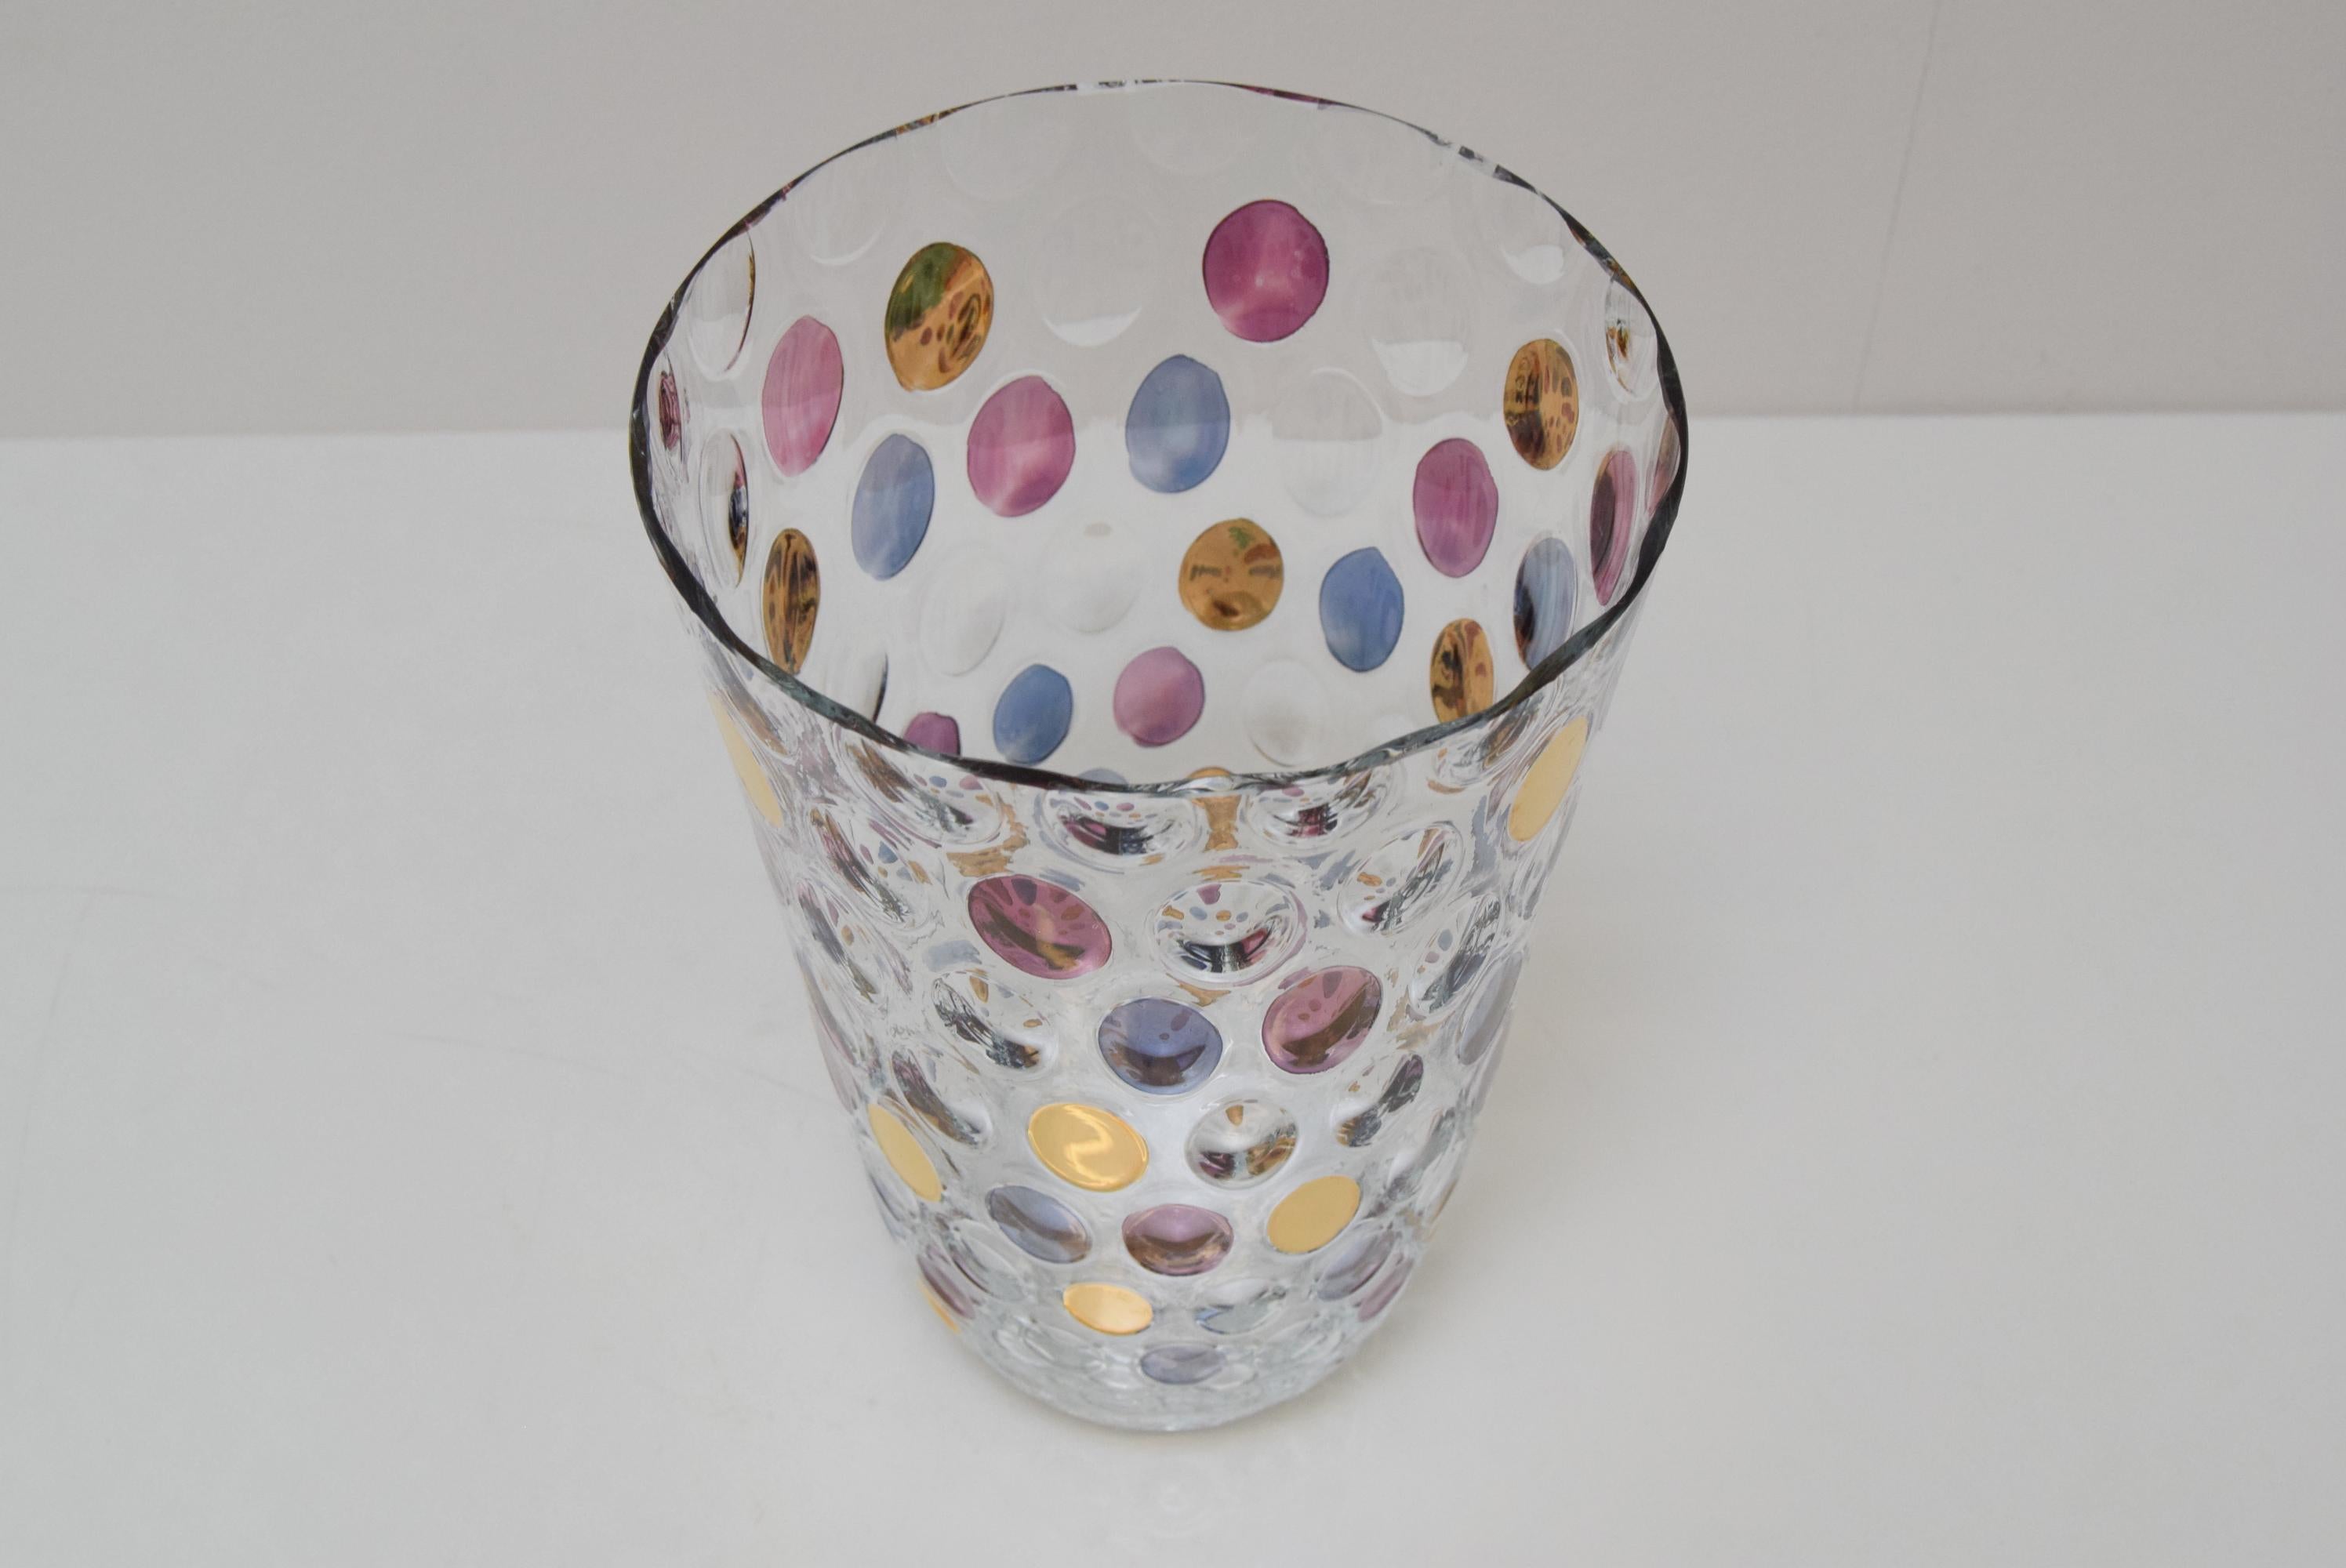 Czech Vintage Glass Vase, by Glasswork Novy Bor, 1950s